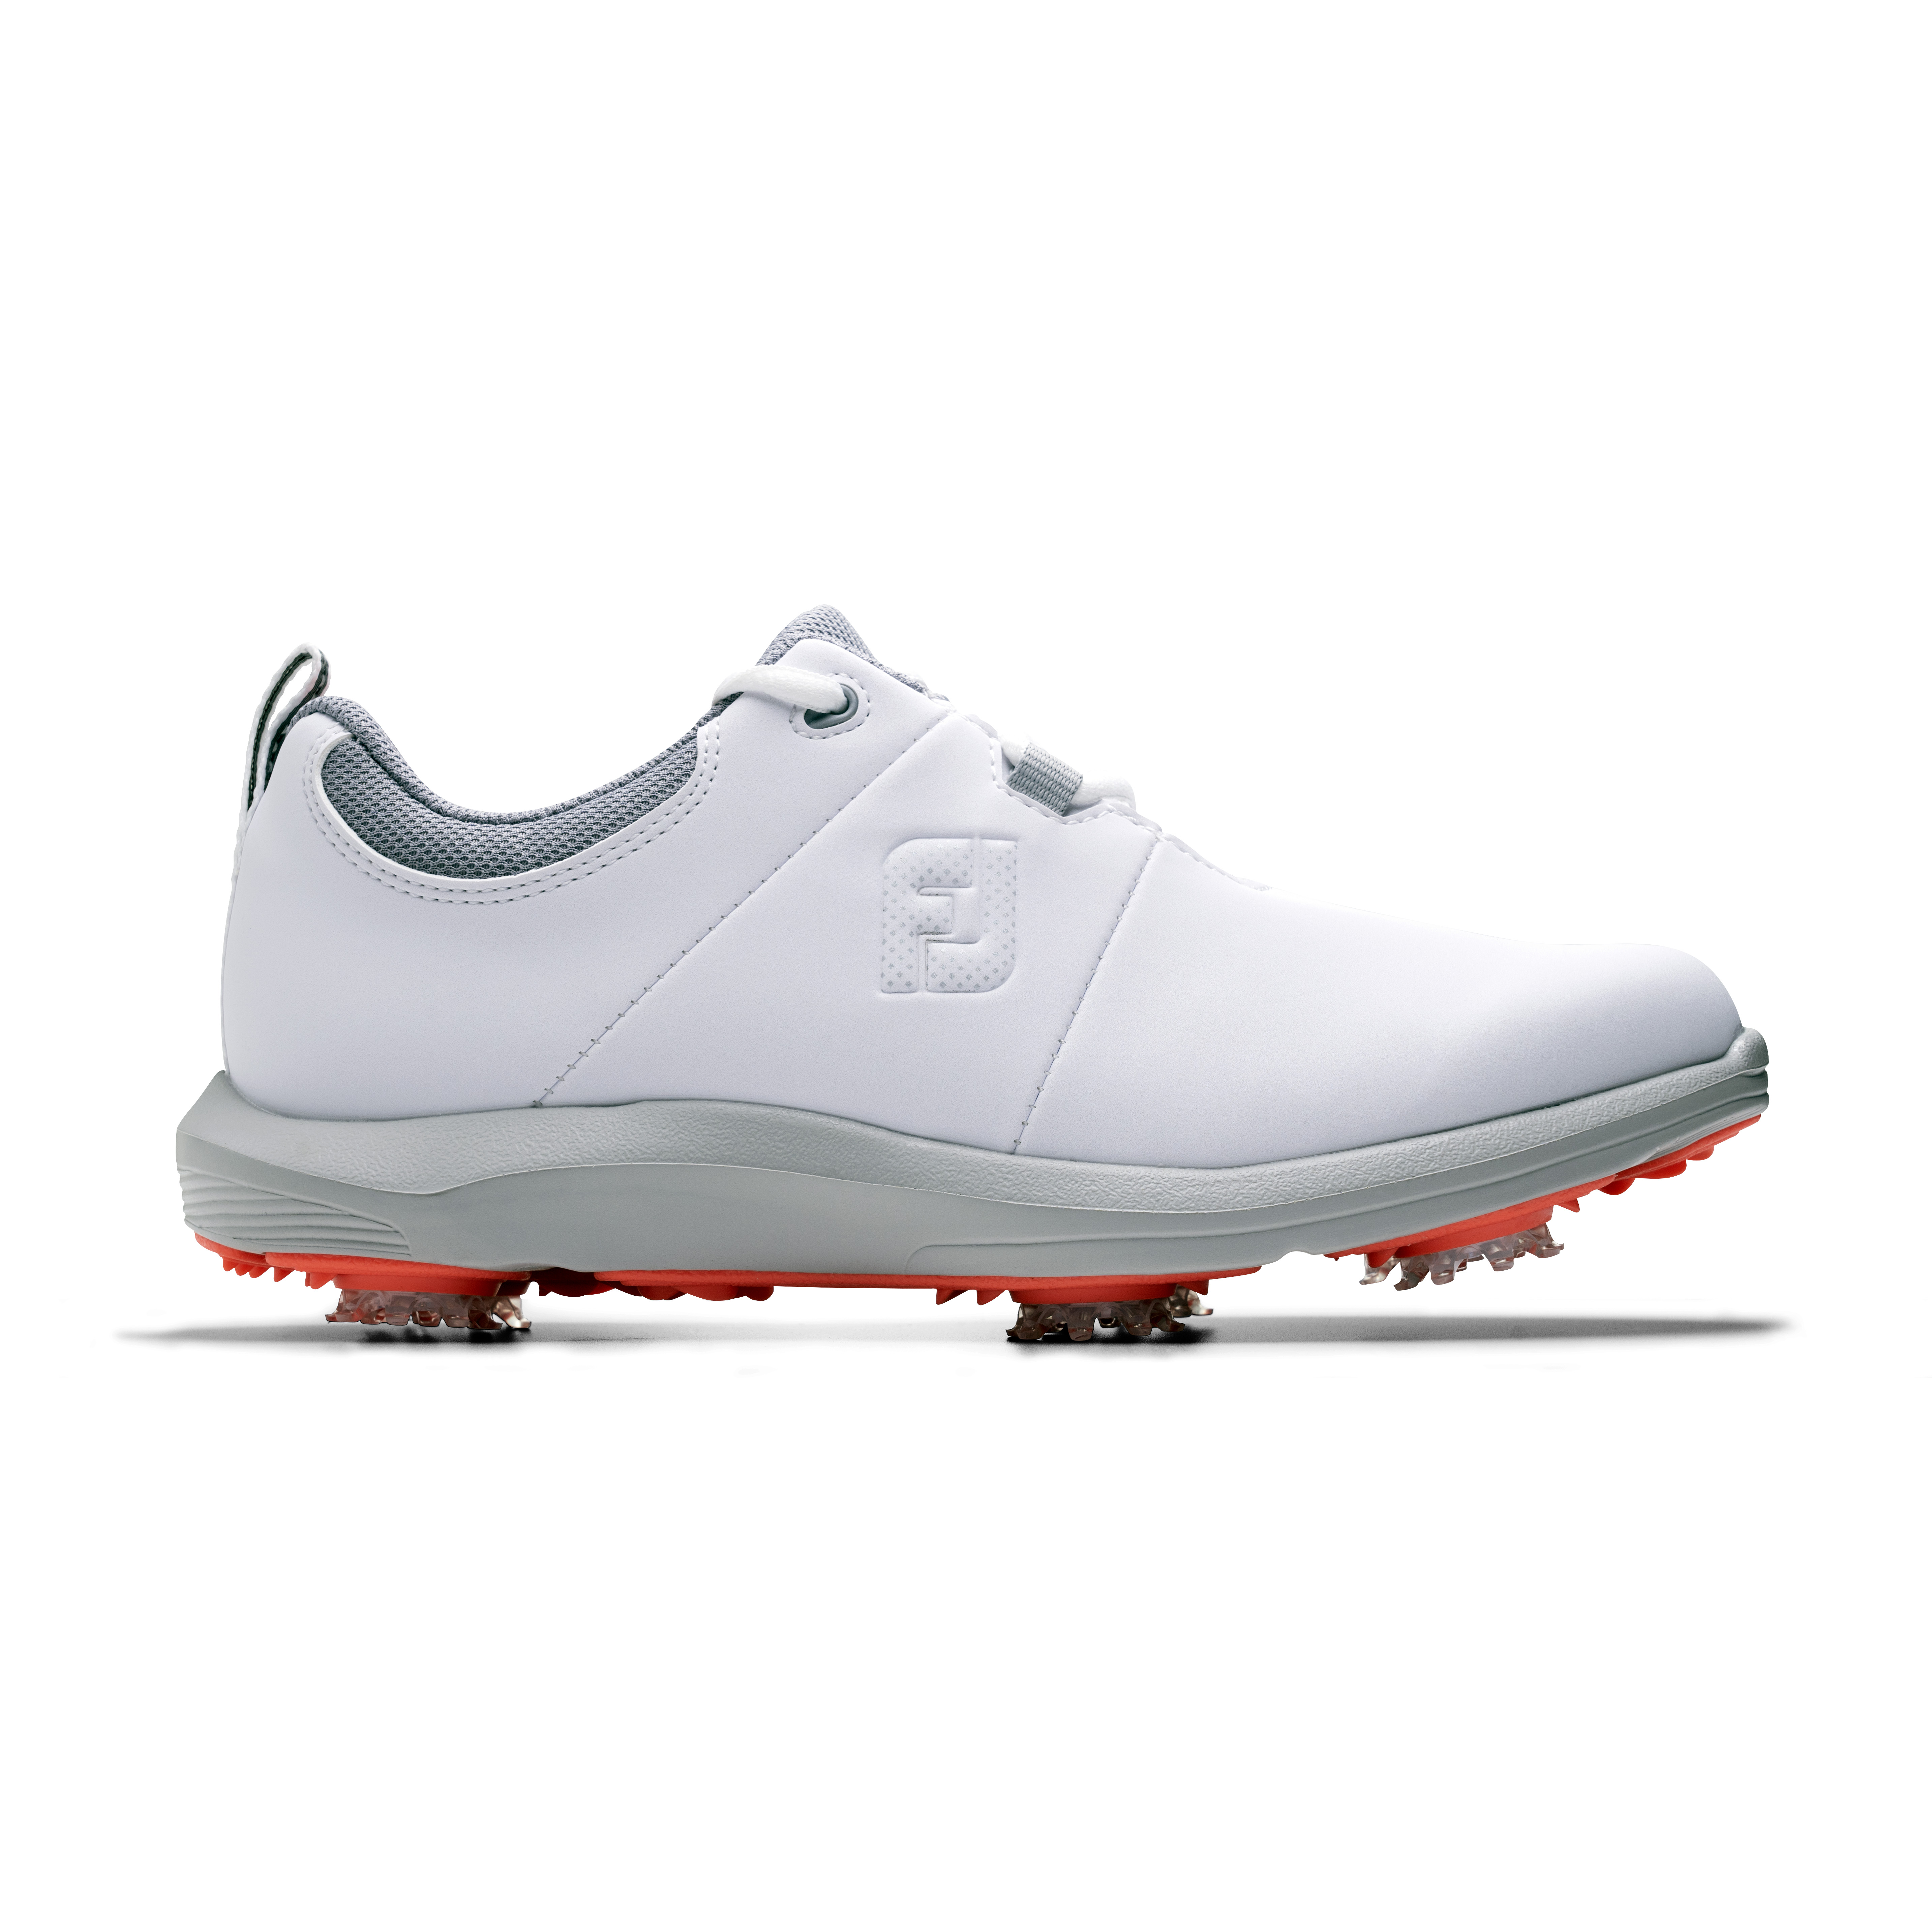 FootJoy eComfort dámské golfové boty, bílé/šedé, vel. 4,5 UK